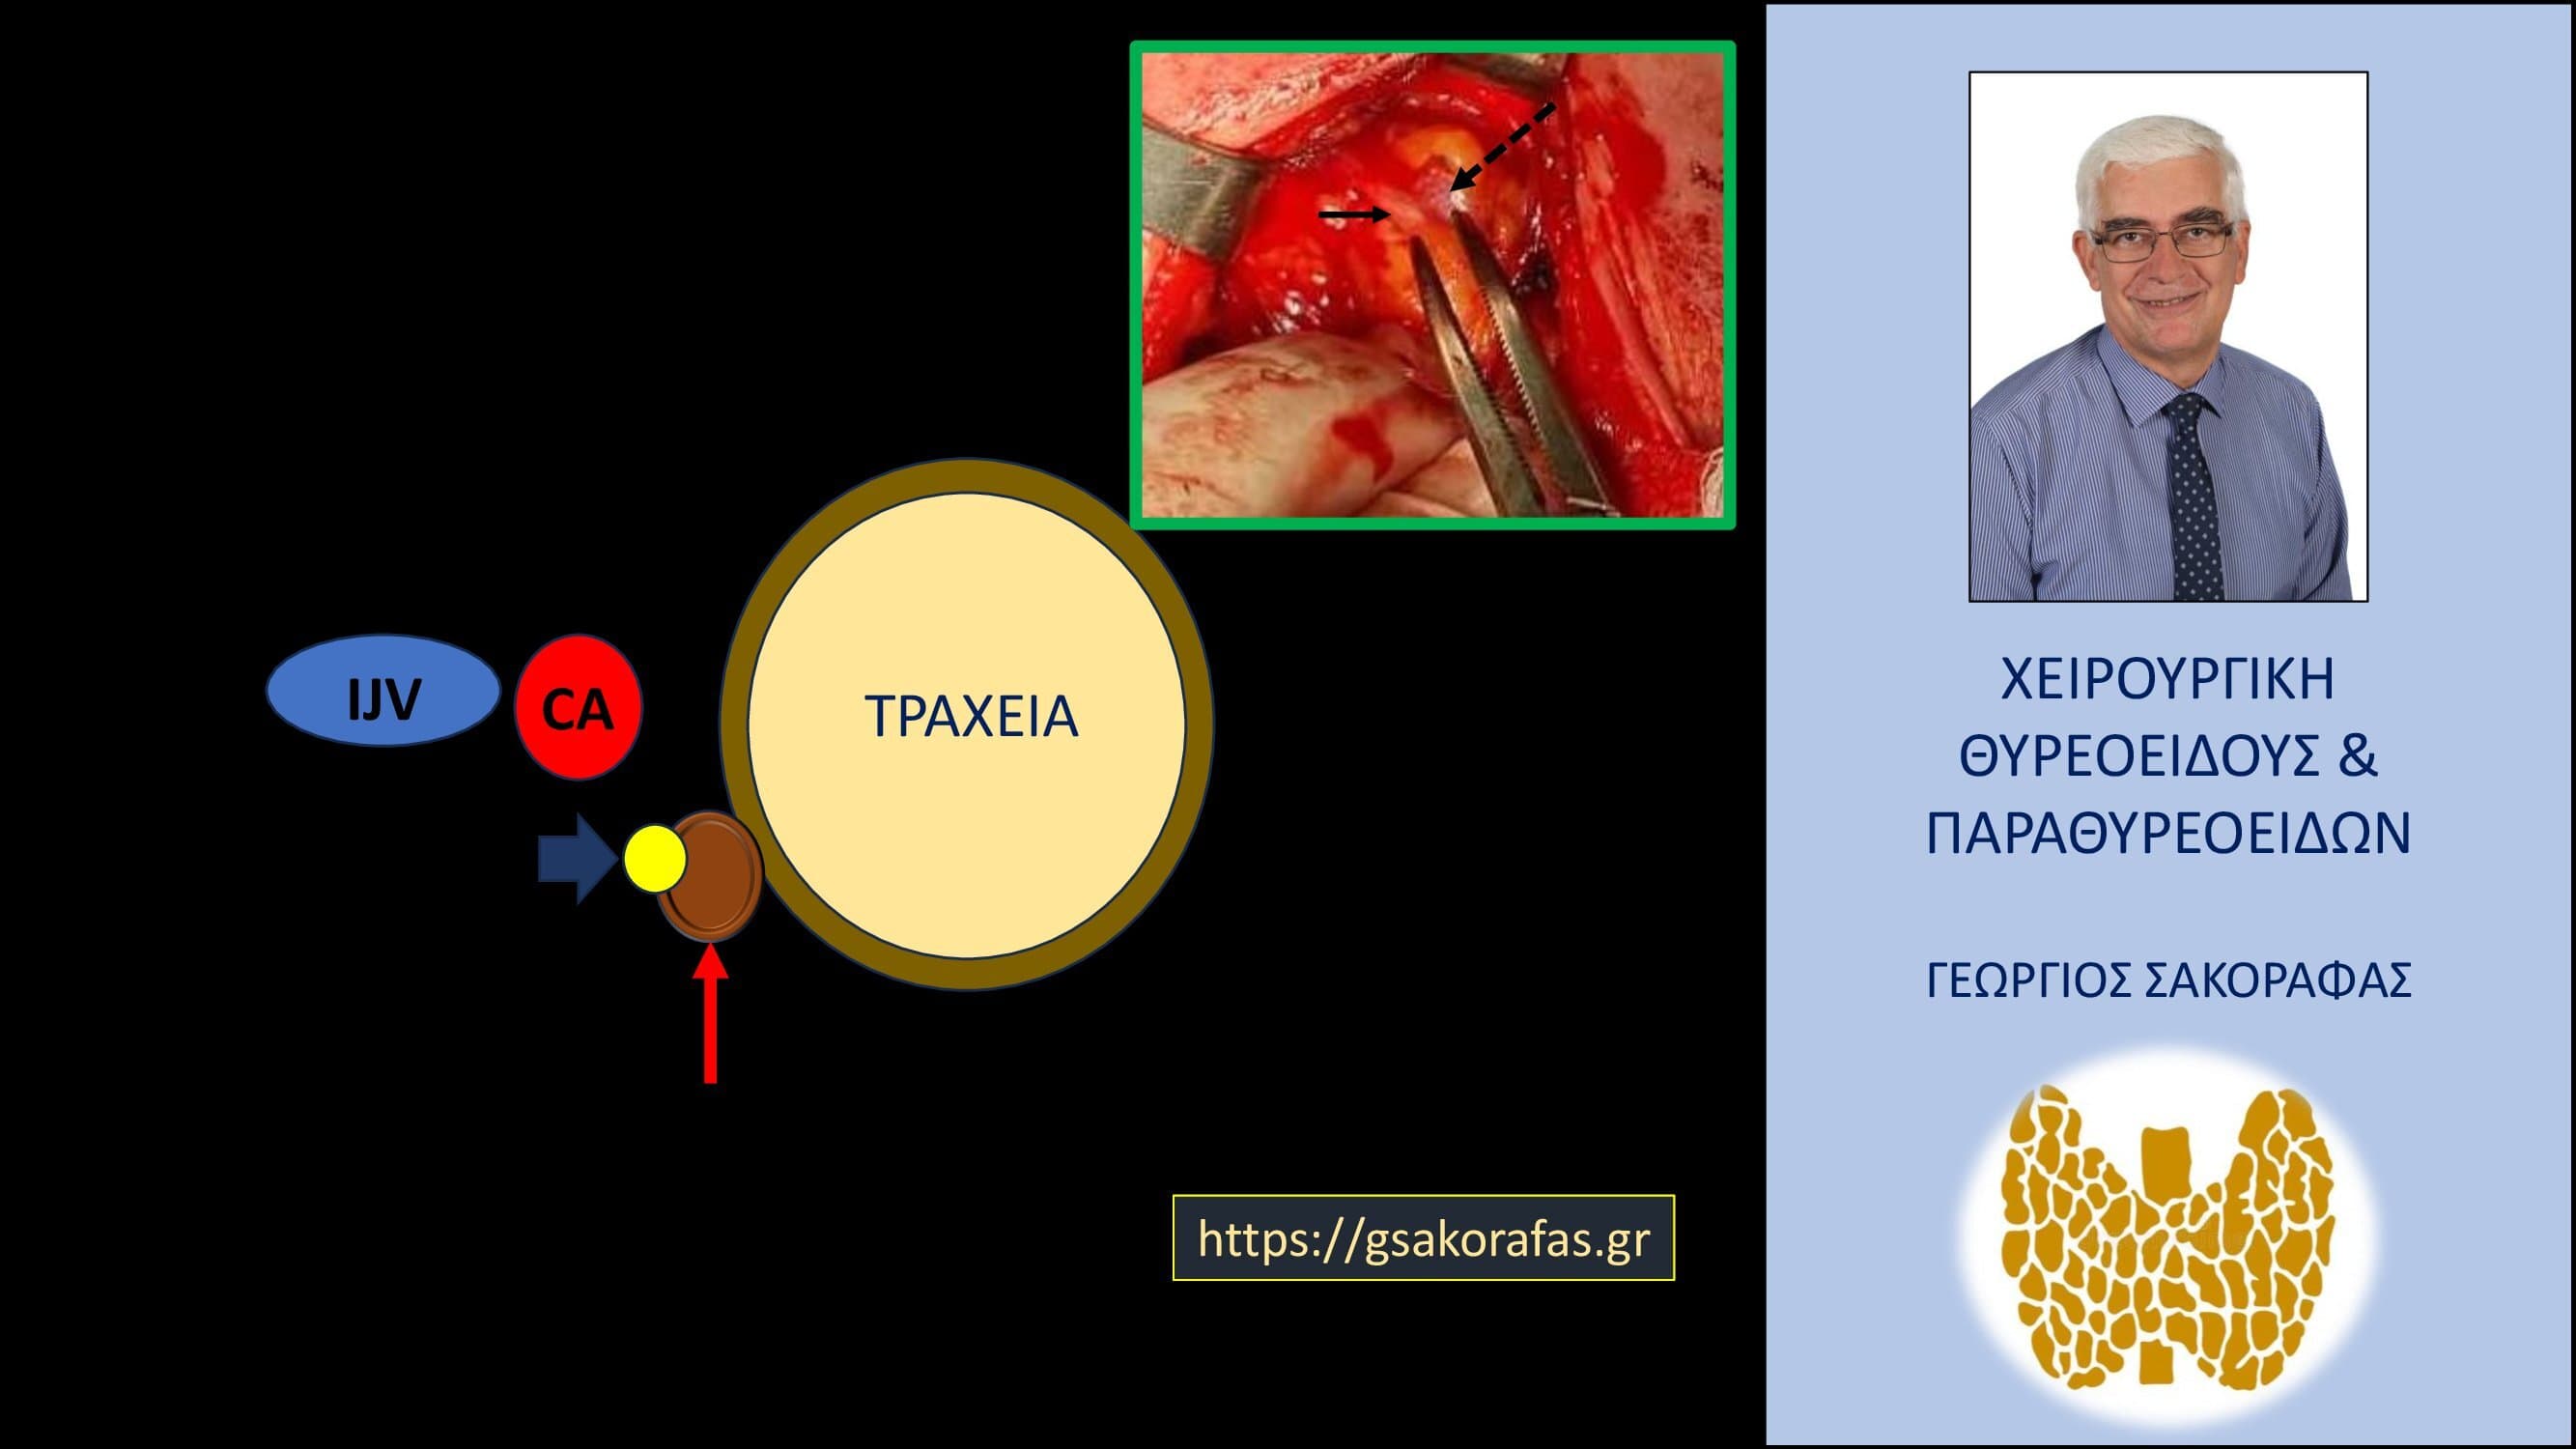 Θυρεοειδεκτομή παραθυρεοειδεκτομή : συνδυασμένη επέμβαση σε ασθενή μας με ‘δύσκολη’ θέση του αδενώματος παραθυρεοειδούς.